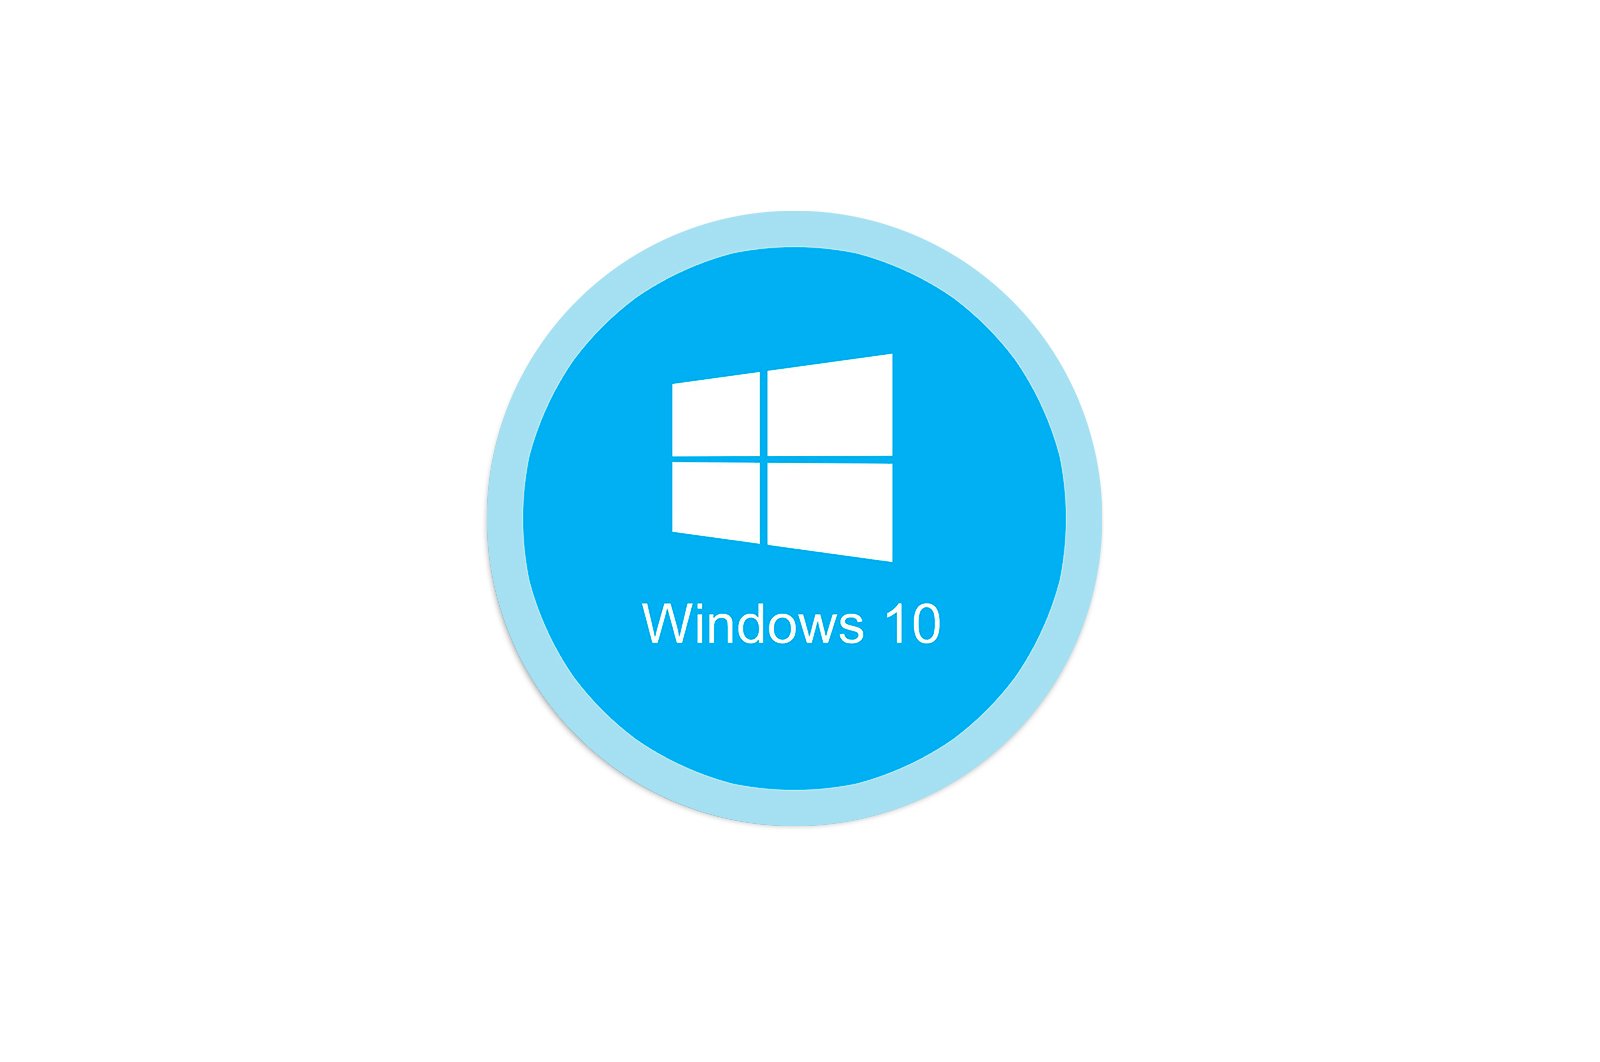 windows 10 da standart shlyuz mavjud emas xatosini qanday hal qilish mumkin haqida malumot 65cd70cd23e3d